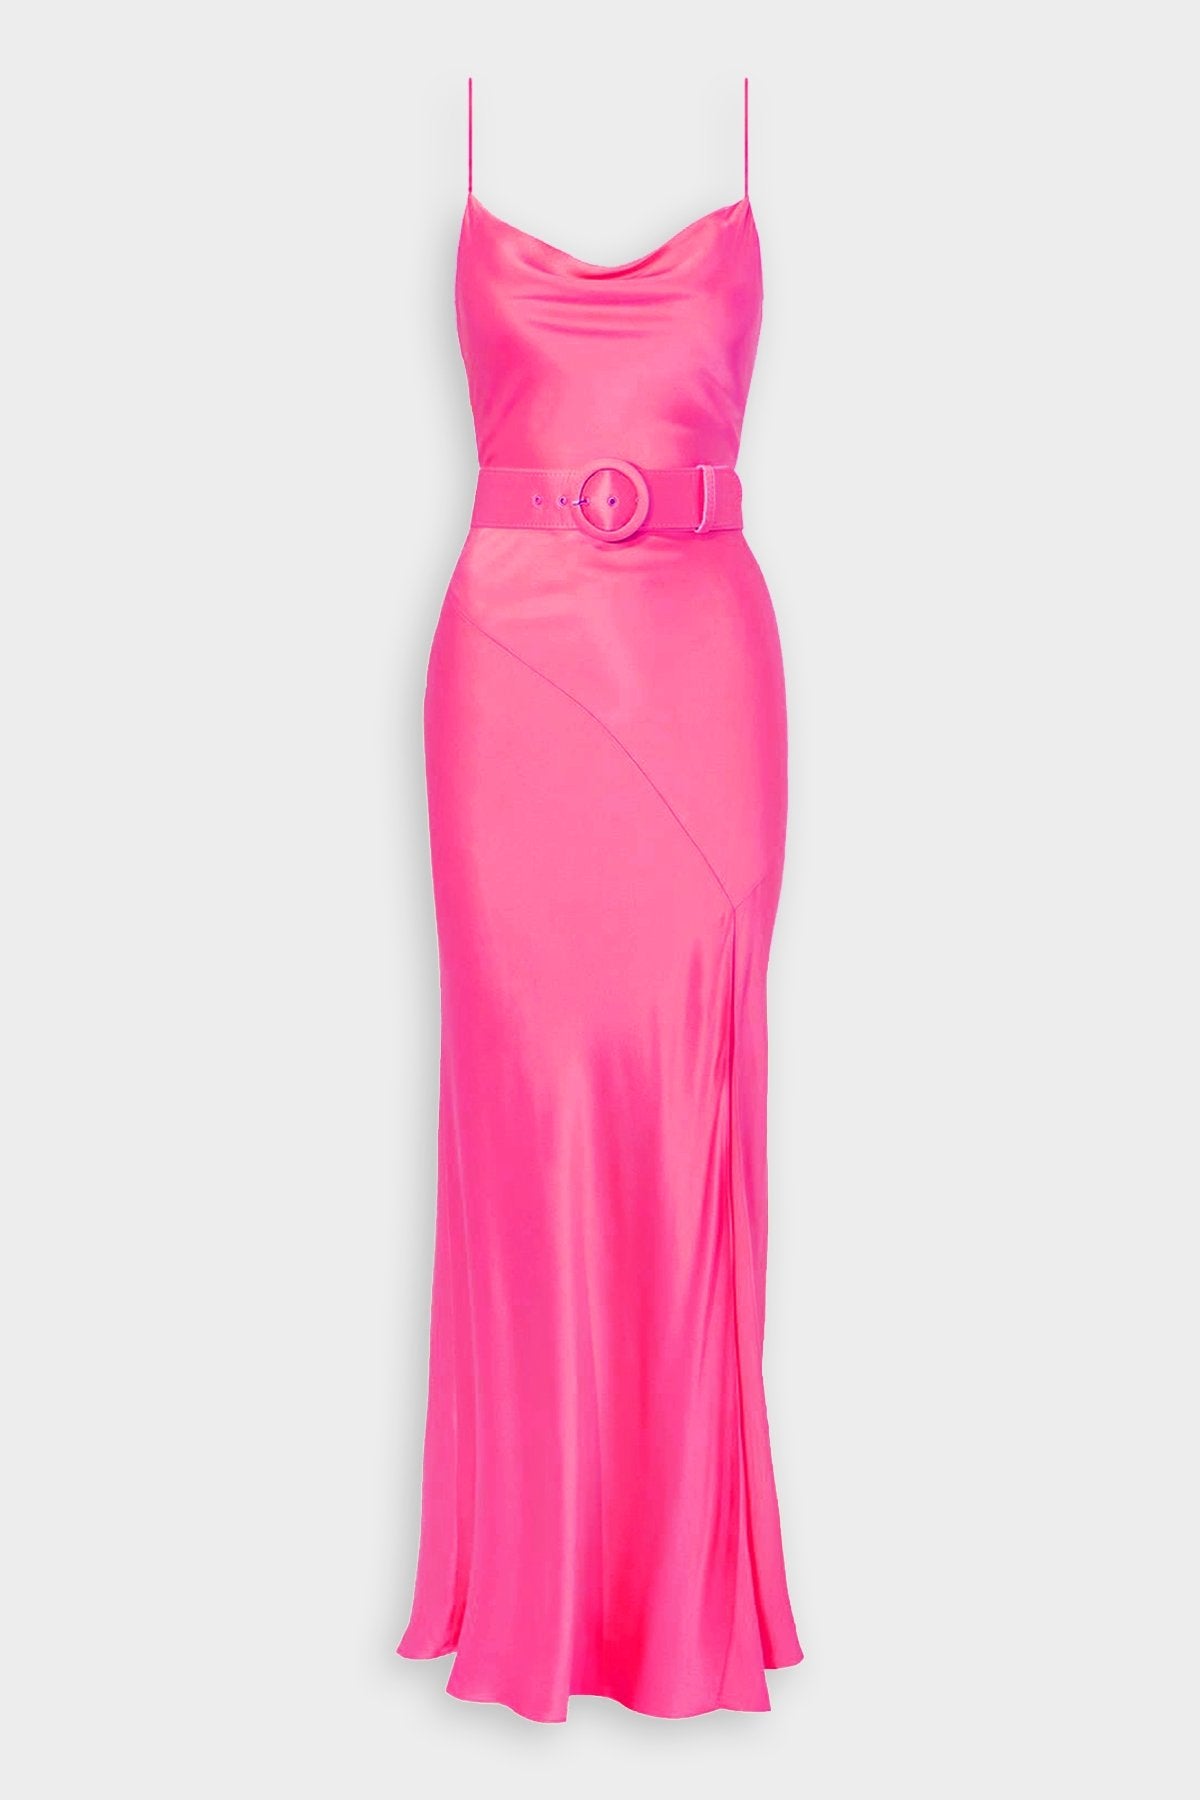 Simone Cowl Neck Gown in Paris Pink - shop-olivia.com